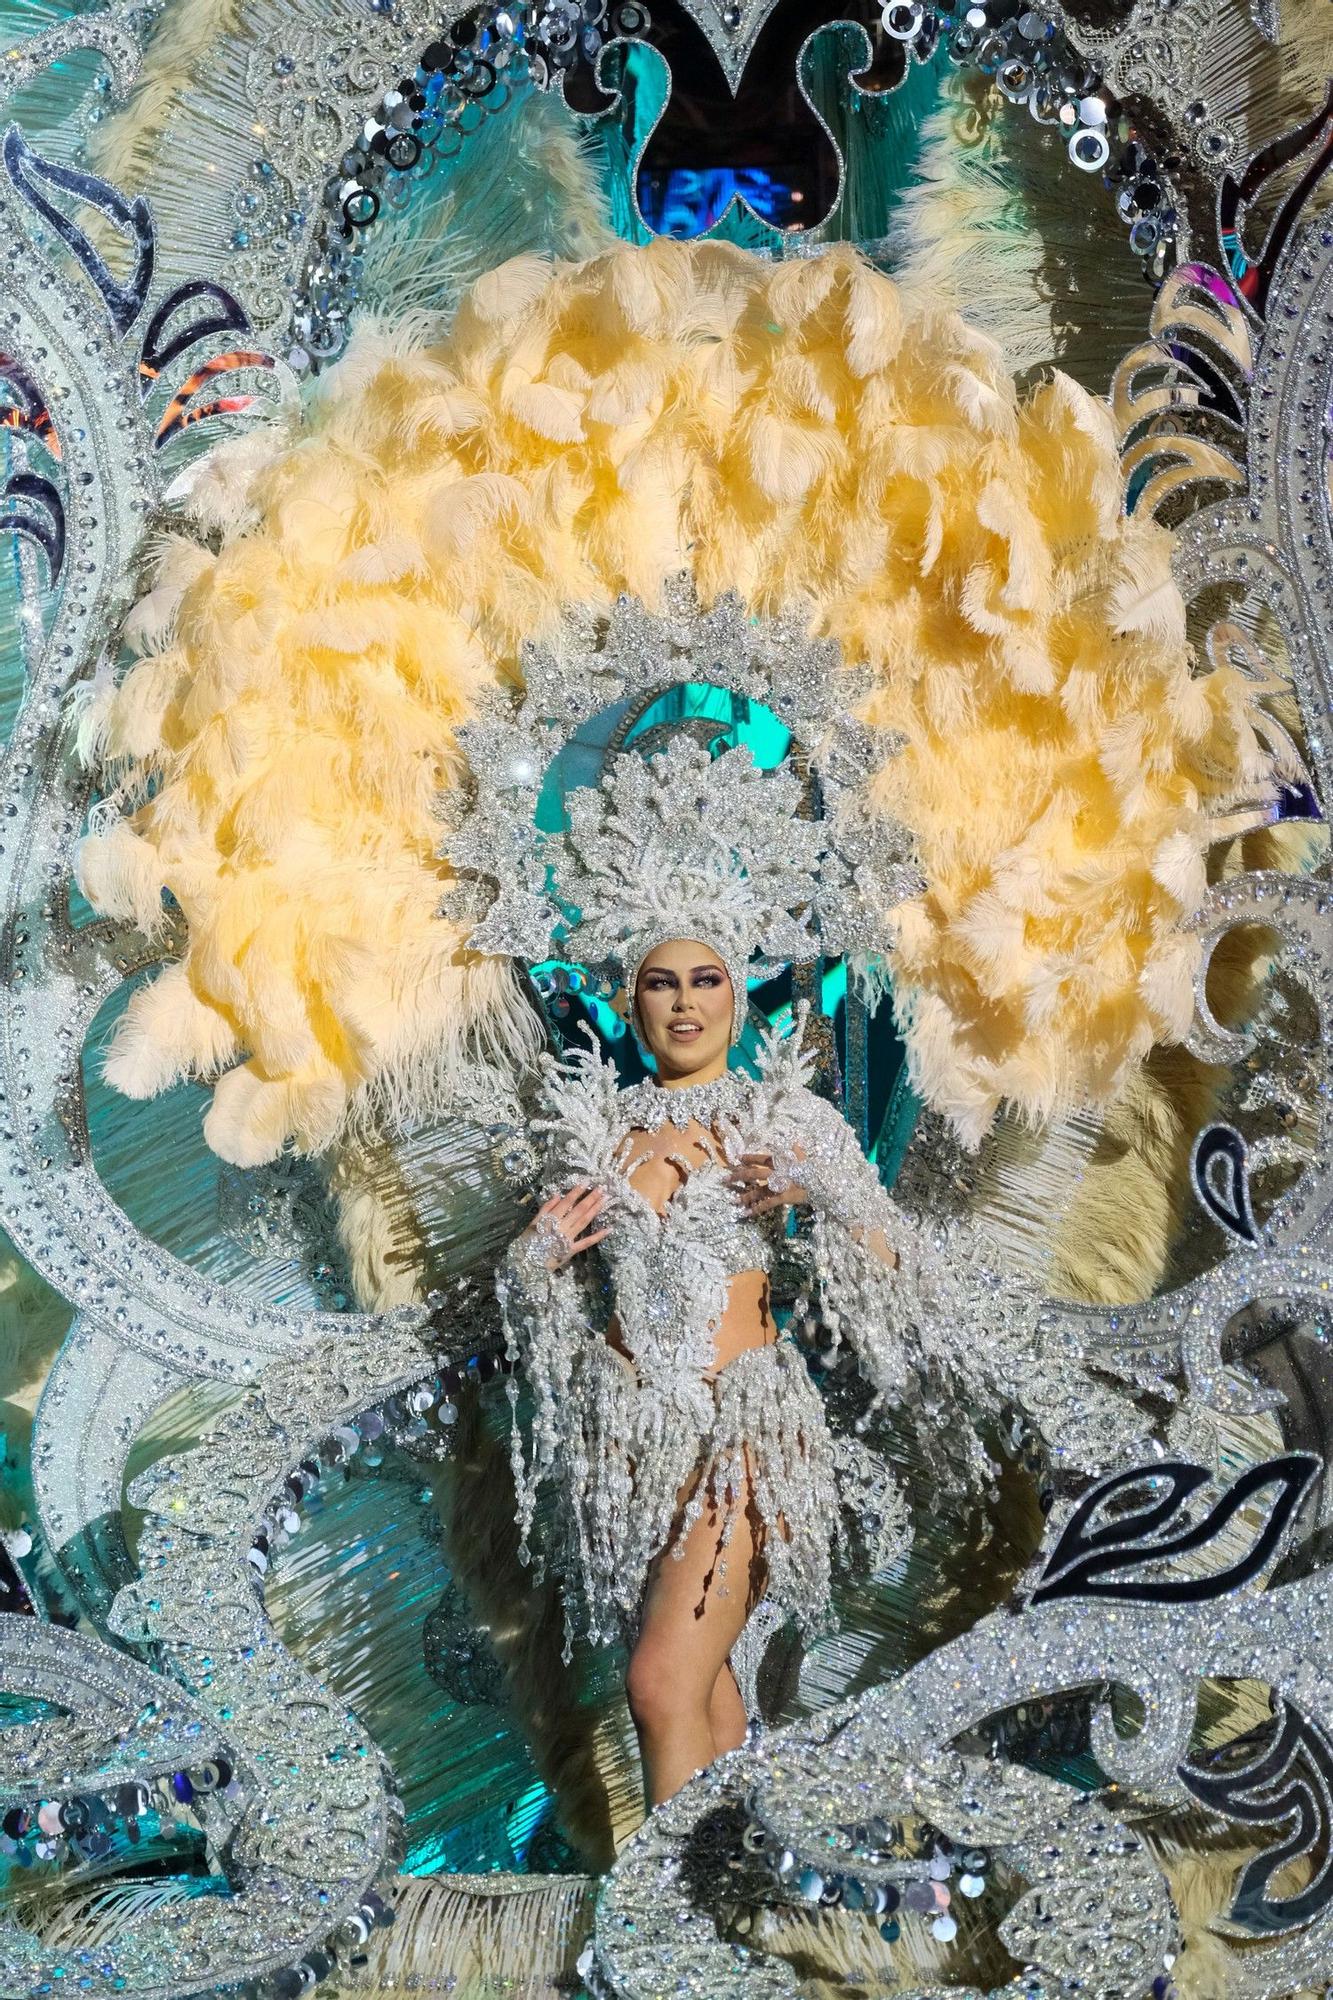 La Gala de la Reina del Carnaval de Las Palmas de Gran Canaria 2023, el desfile de las candidatas